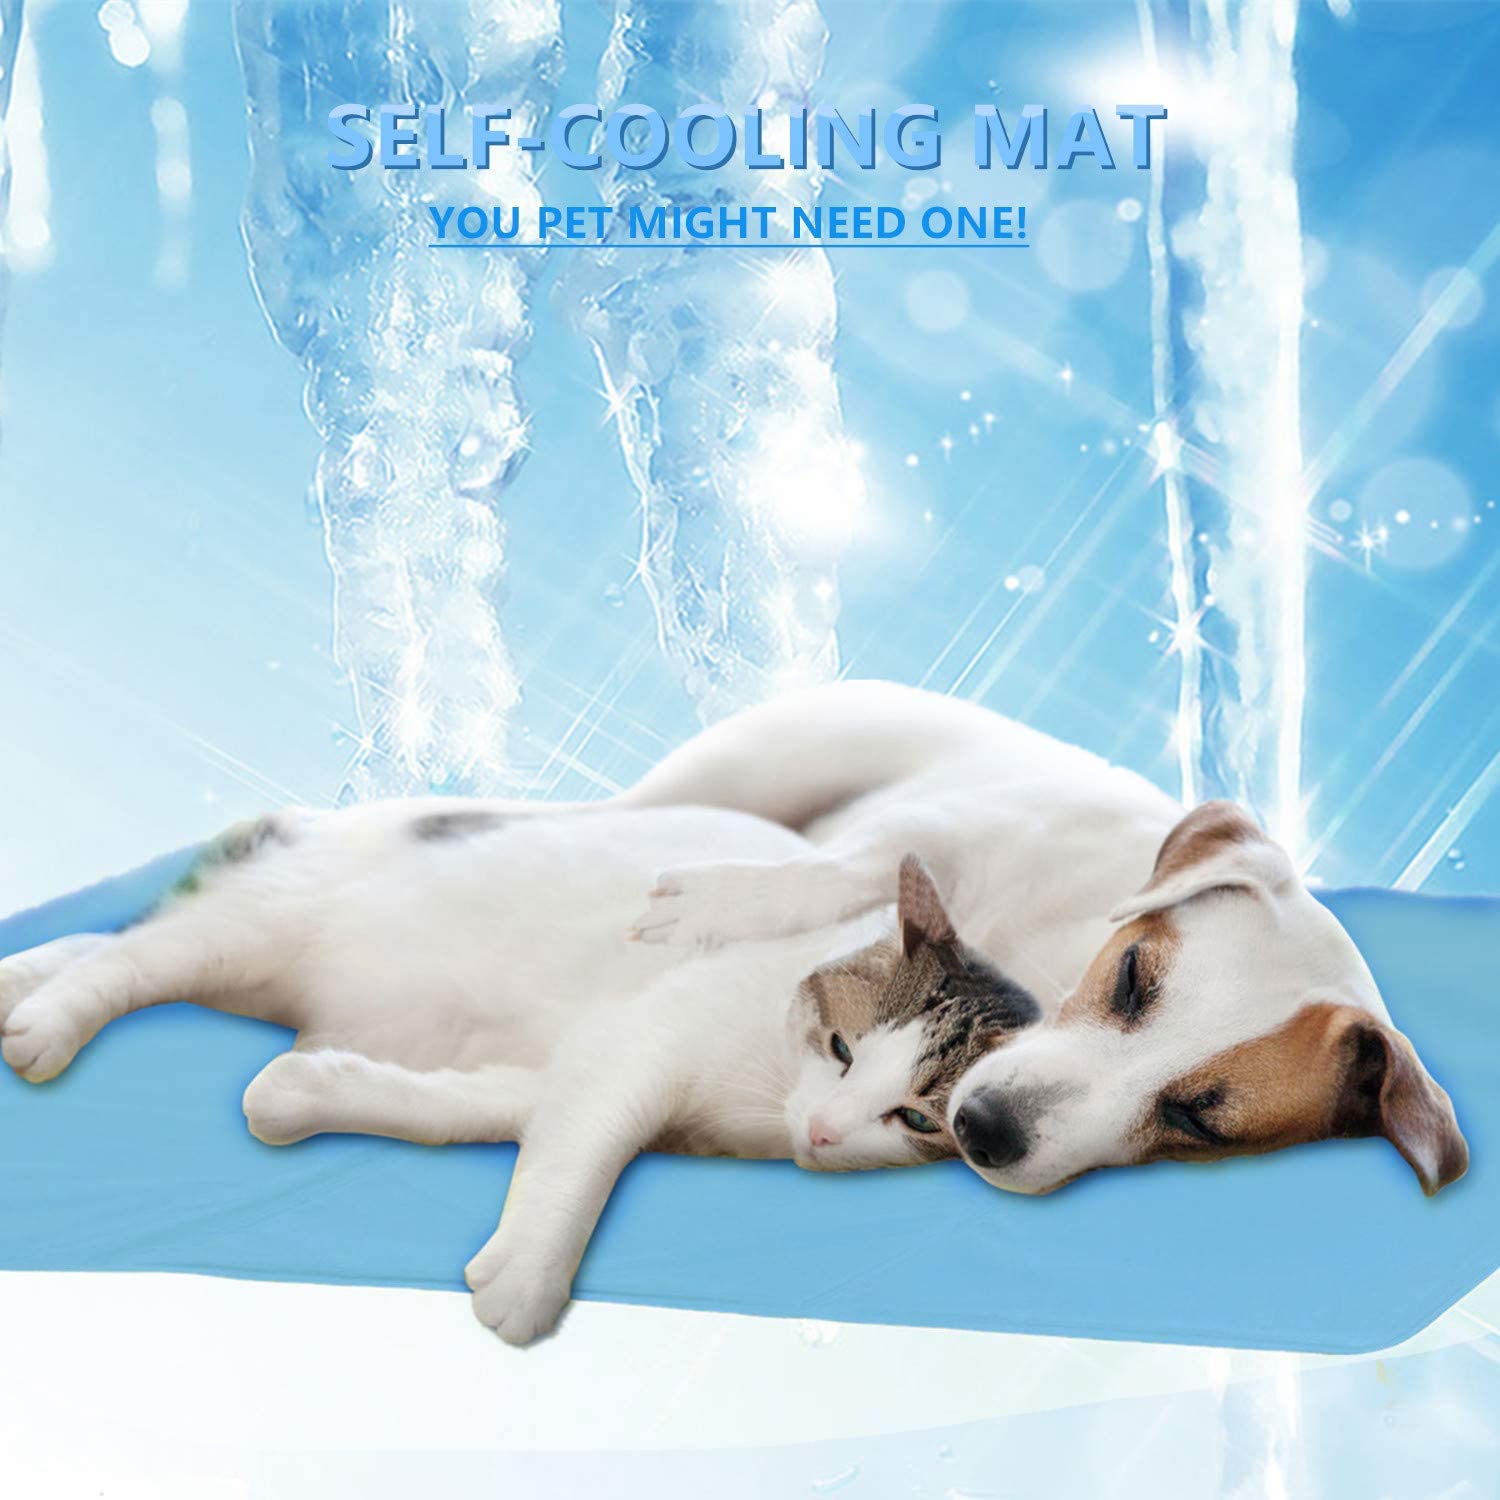  ForUUU Alfombrilla de Refrigeración Animales, Manta para Perros Fria Alfombra Refrescante para Mascotas Animales Manta de Dormir Fresco Cojín Azul (S: 18 * 12 in(60 * 40 cm)) 